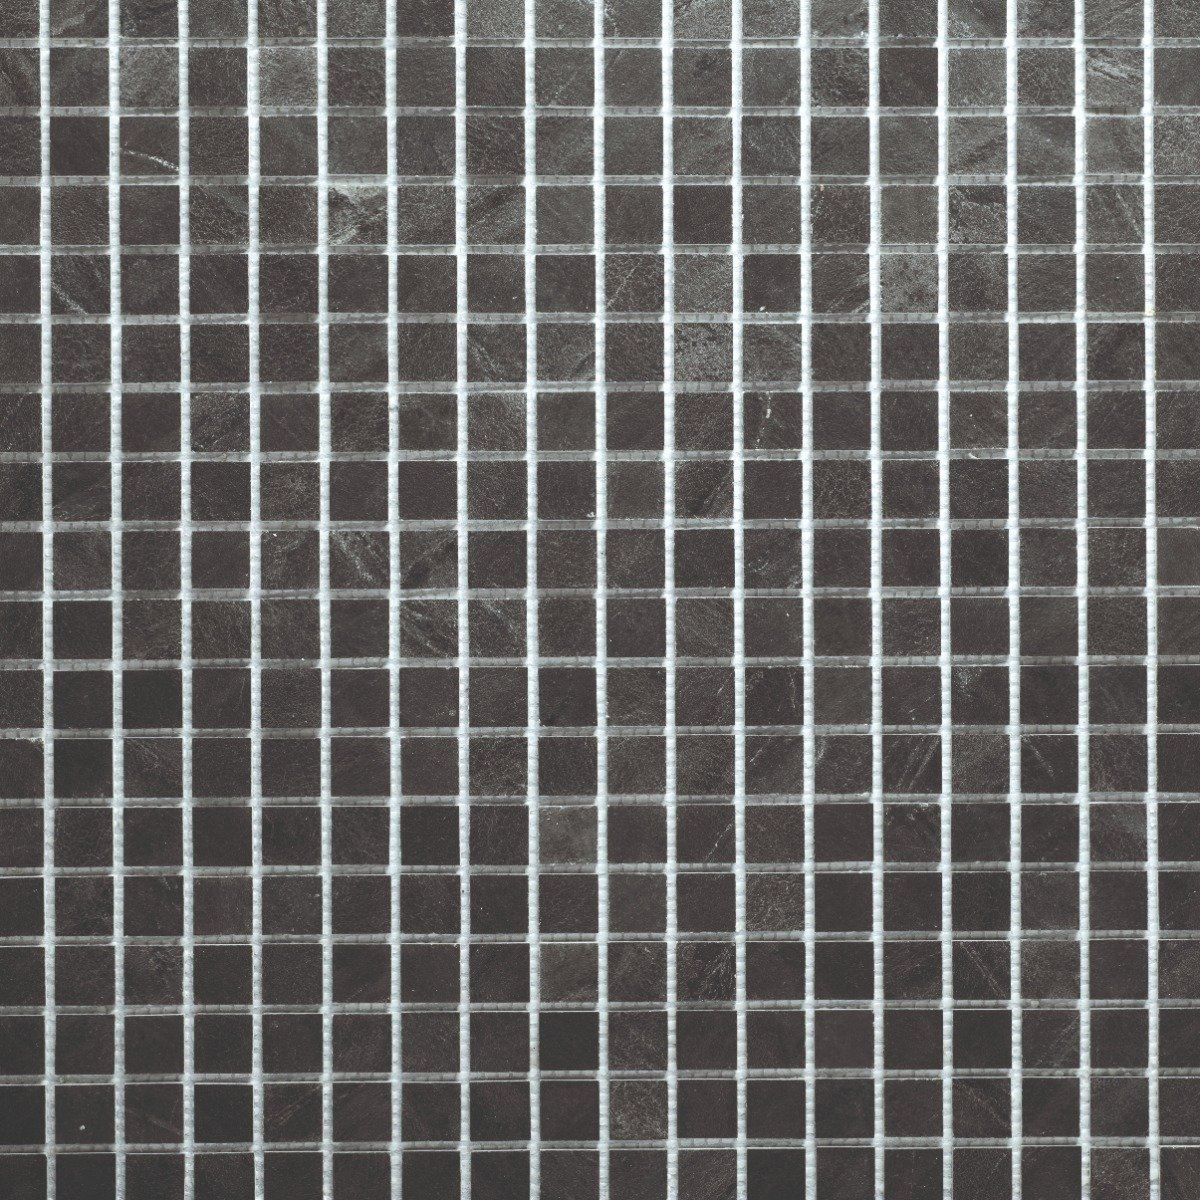 Slicedstone Bathroom Mosaic Tile Graphite (25x25mm squares) 1000 x 500mm